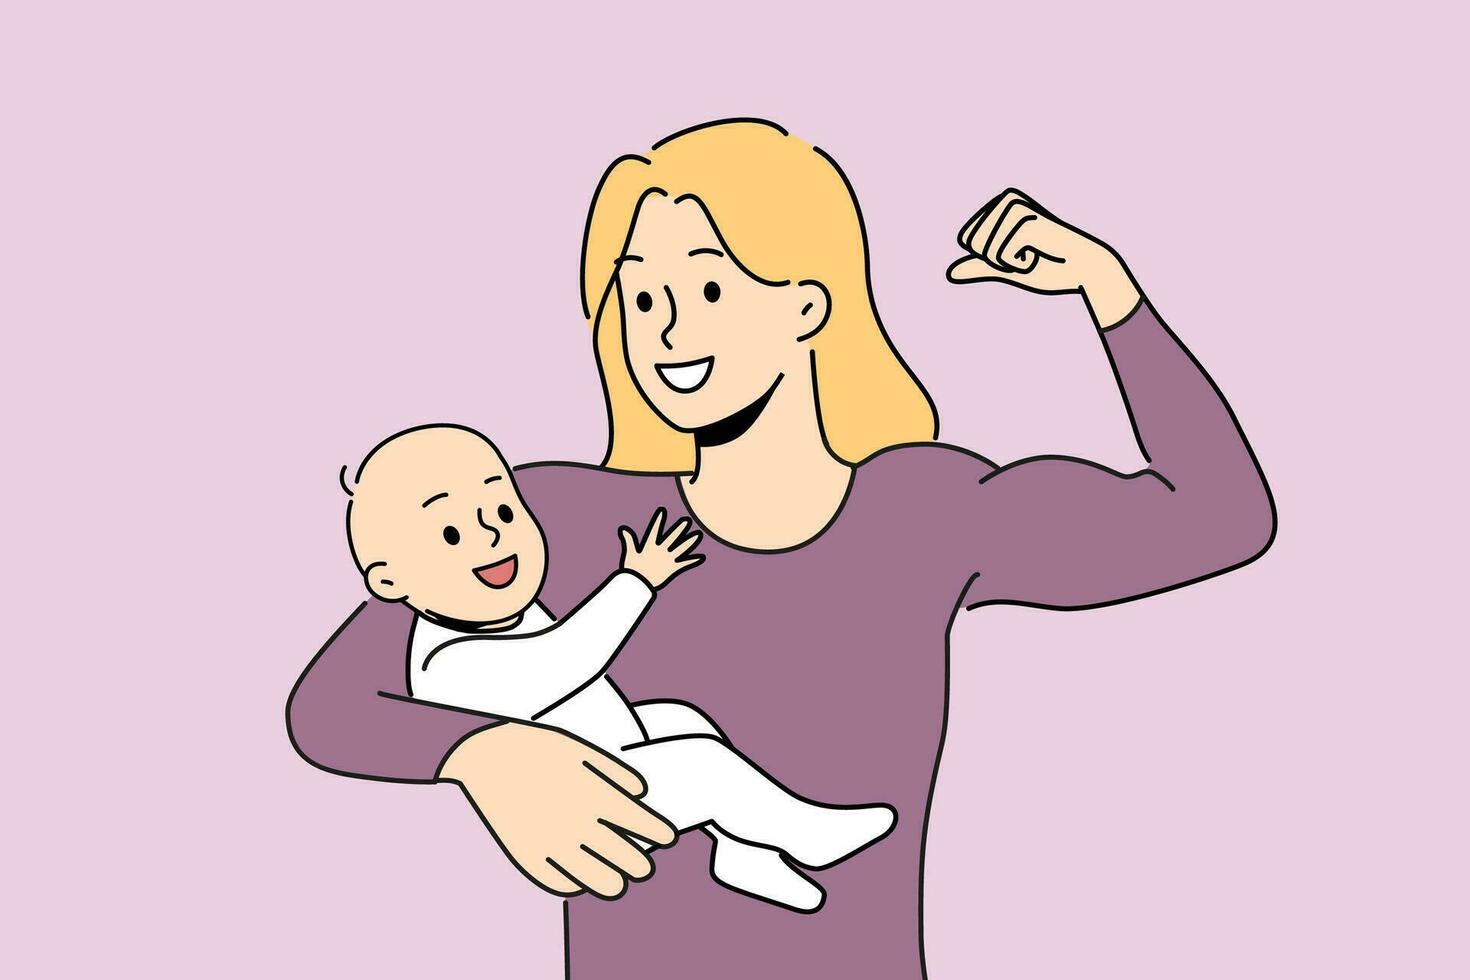 souriant puissant mère montrant biceps en portant nouveau née bébé sur bras. content fort maman avec enfant dans mains. maternité et héroïsme. vecteur illustration.